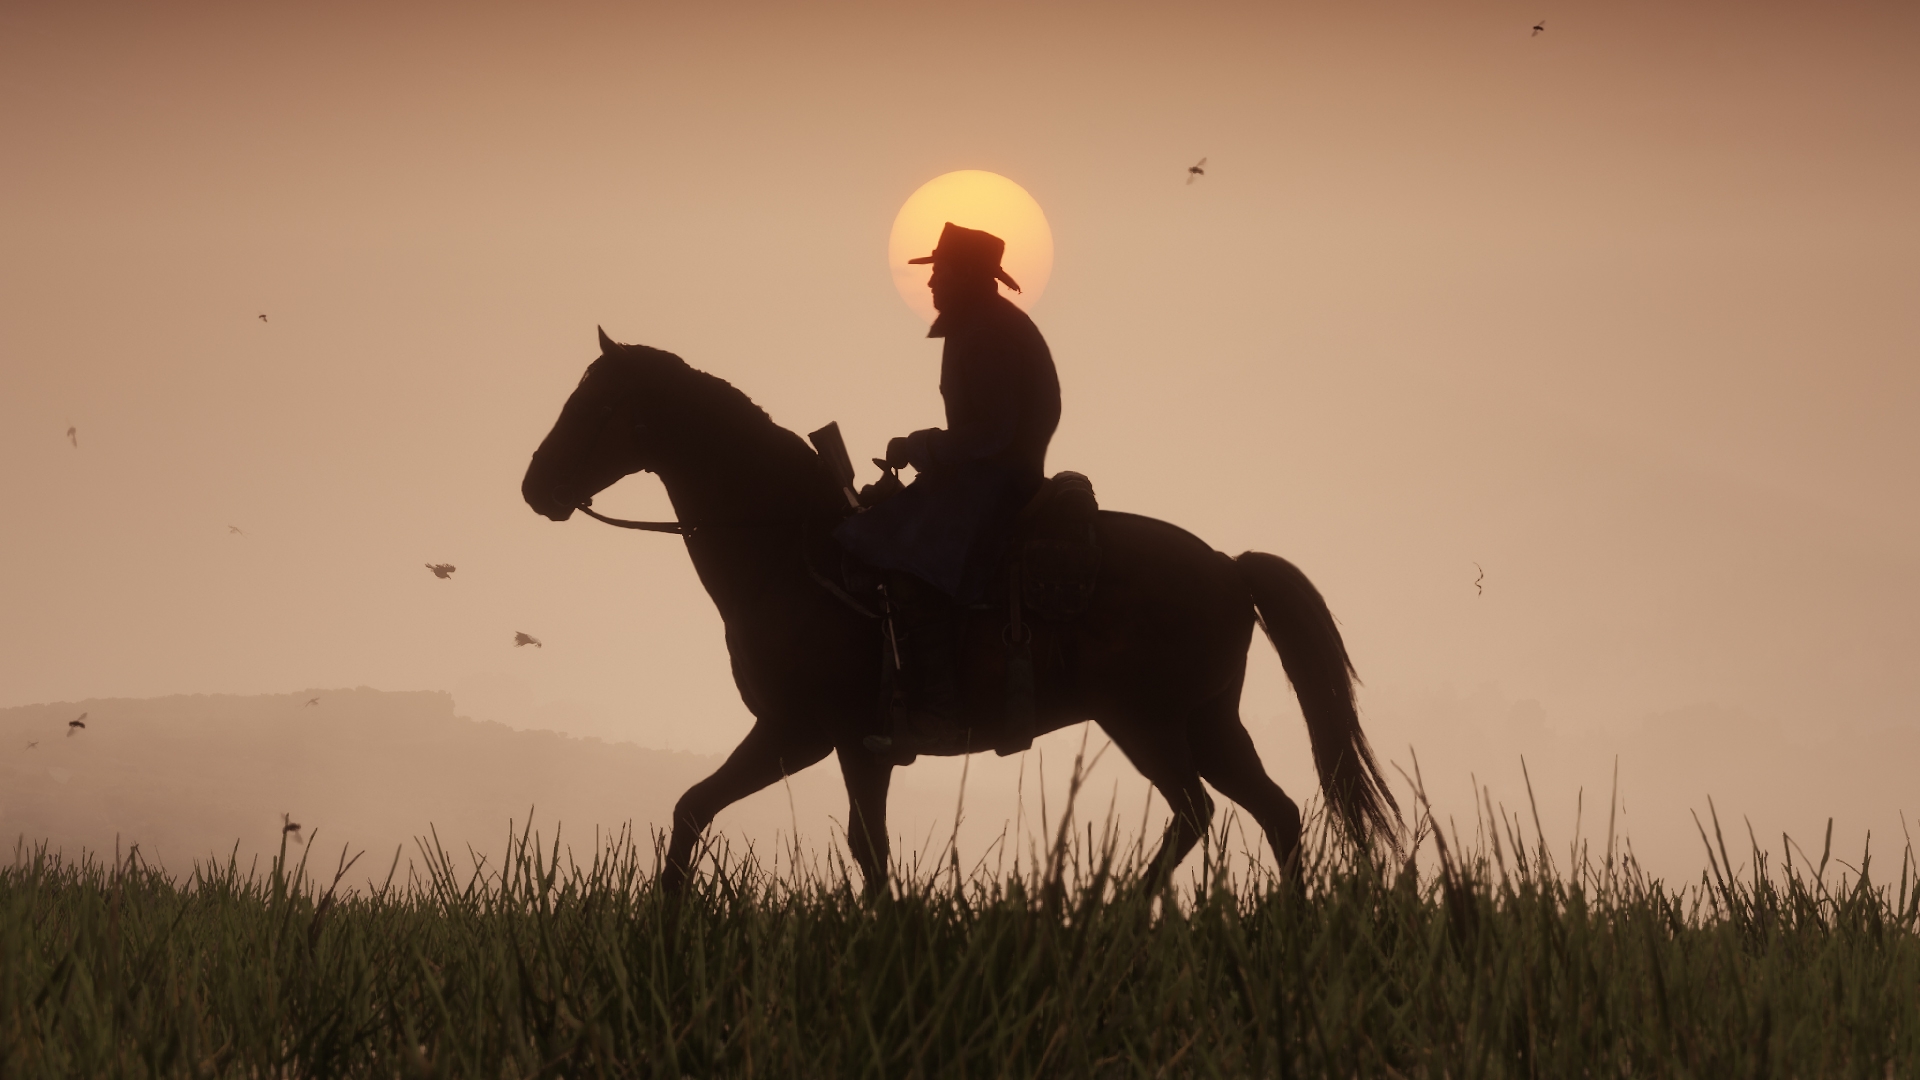 Família de Cavalos Selvagens + De Volta ao Lar! LOBOS!, Red Dead  Redemption 2: Animais Mod